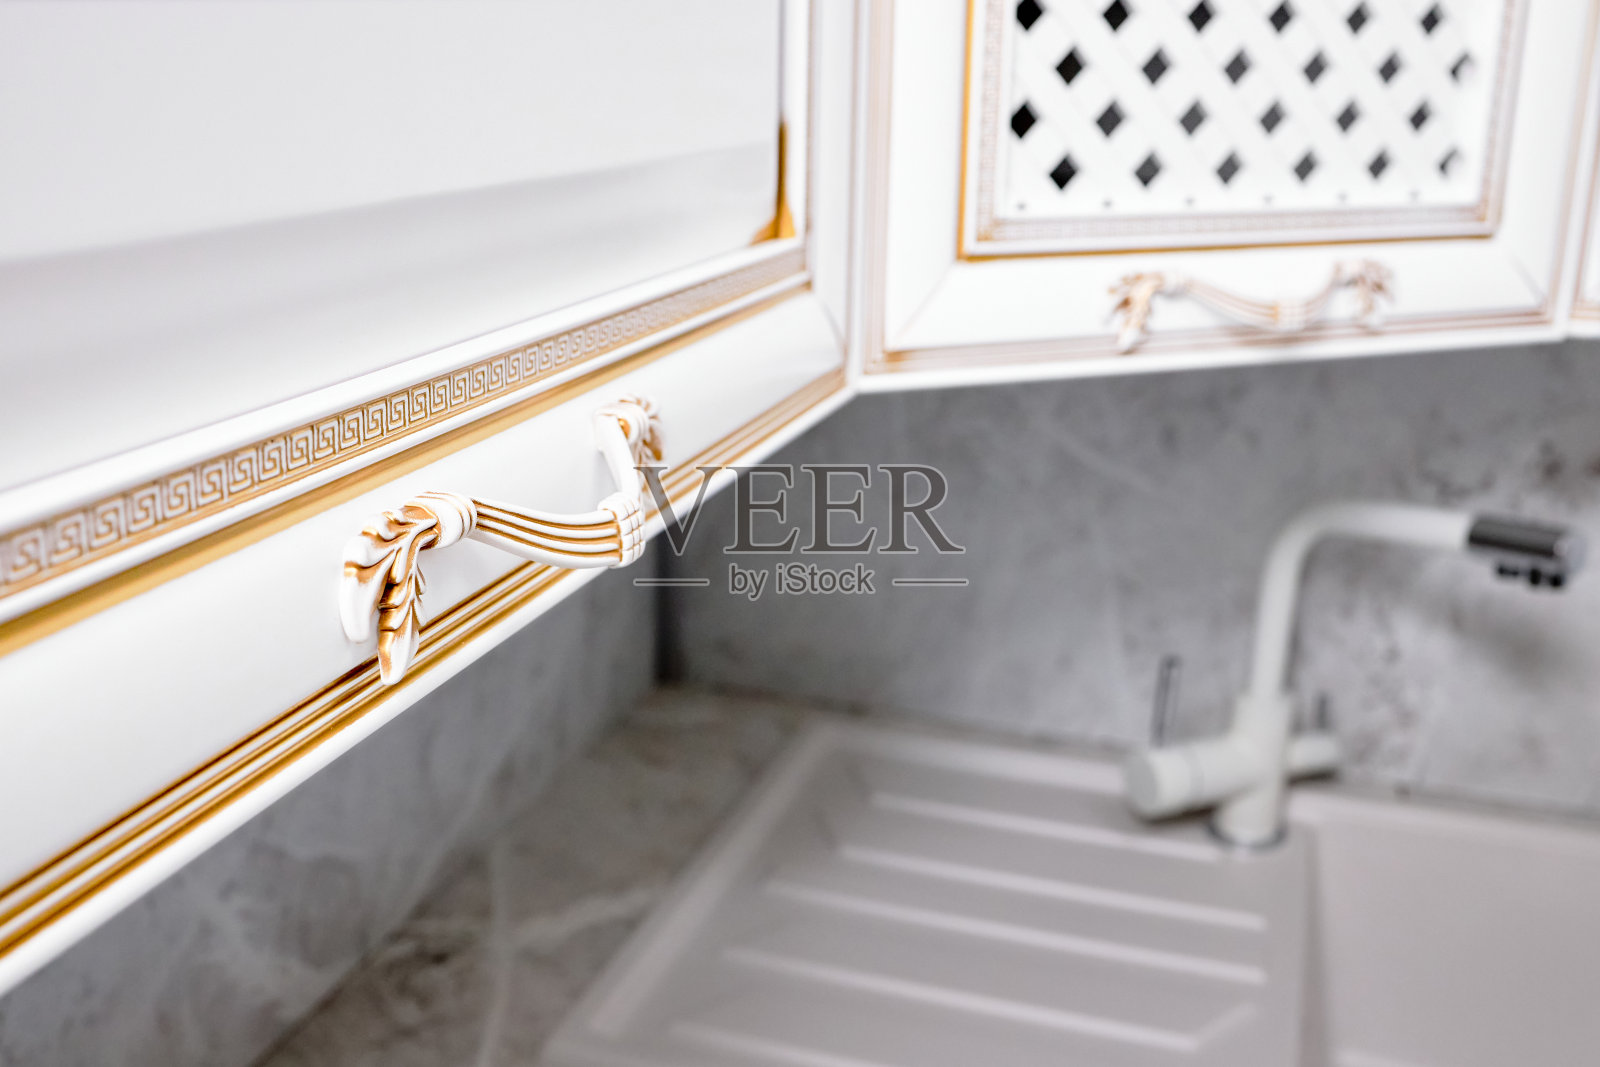 门把手家具概念。厨房立面面板装饰元素白色木质橱柜或橱柜旋钮，白色和金色的古希腊装饰边框装饰图案。照片摄影图片